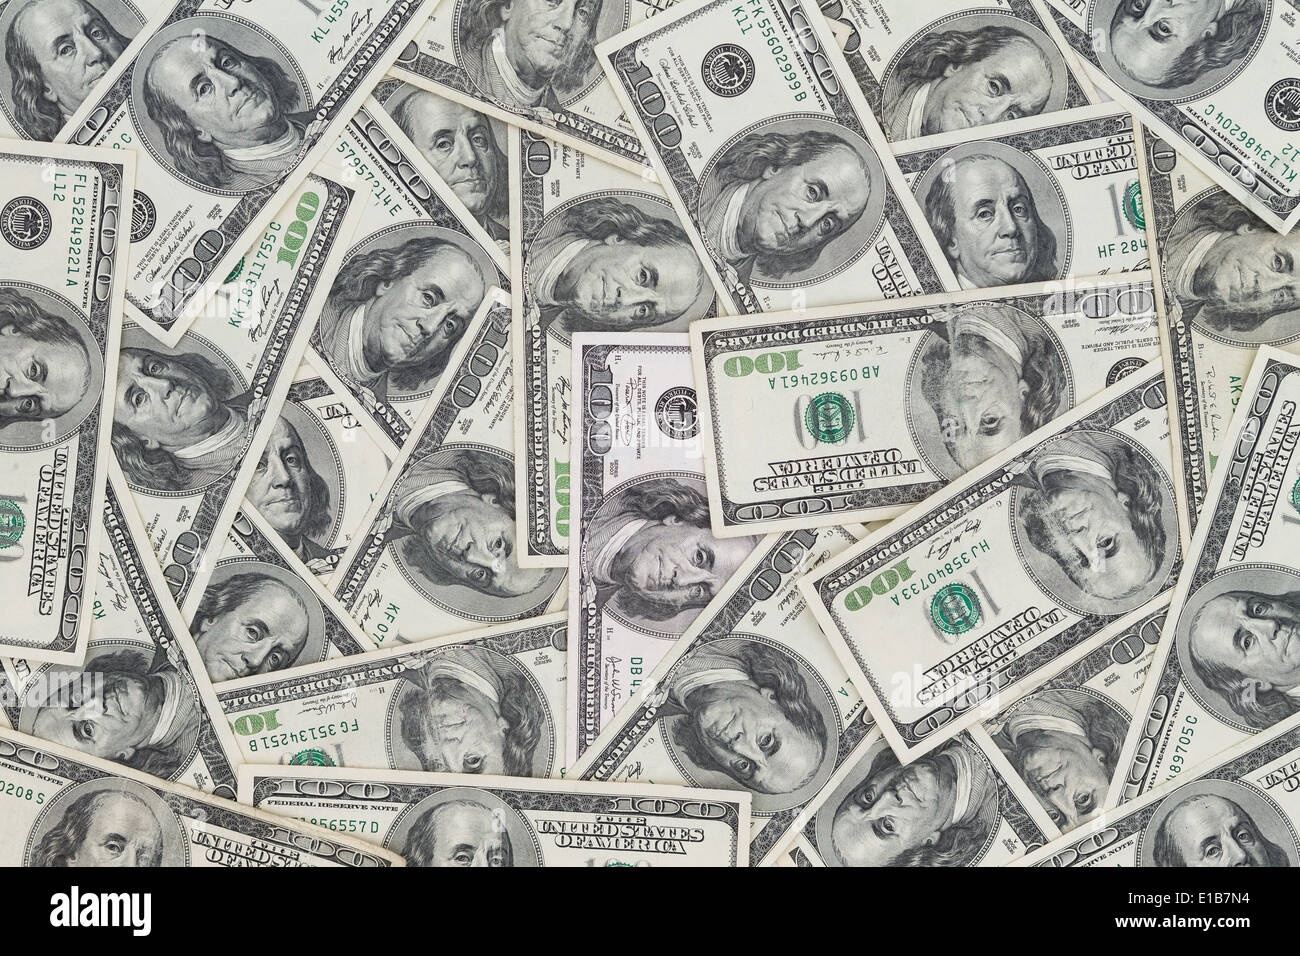 Des centaines de nouvelles Benjamin Franklin 100 dollar bills disposés de manière aléatoire avec le portrait face vers le haut dans un gros plan conceptual Banque D'Images